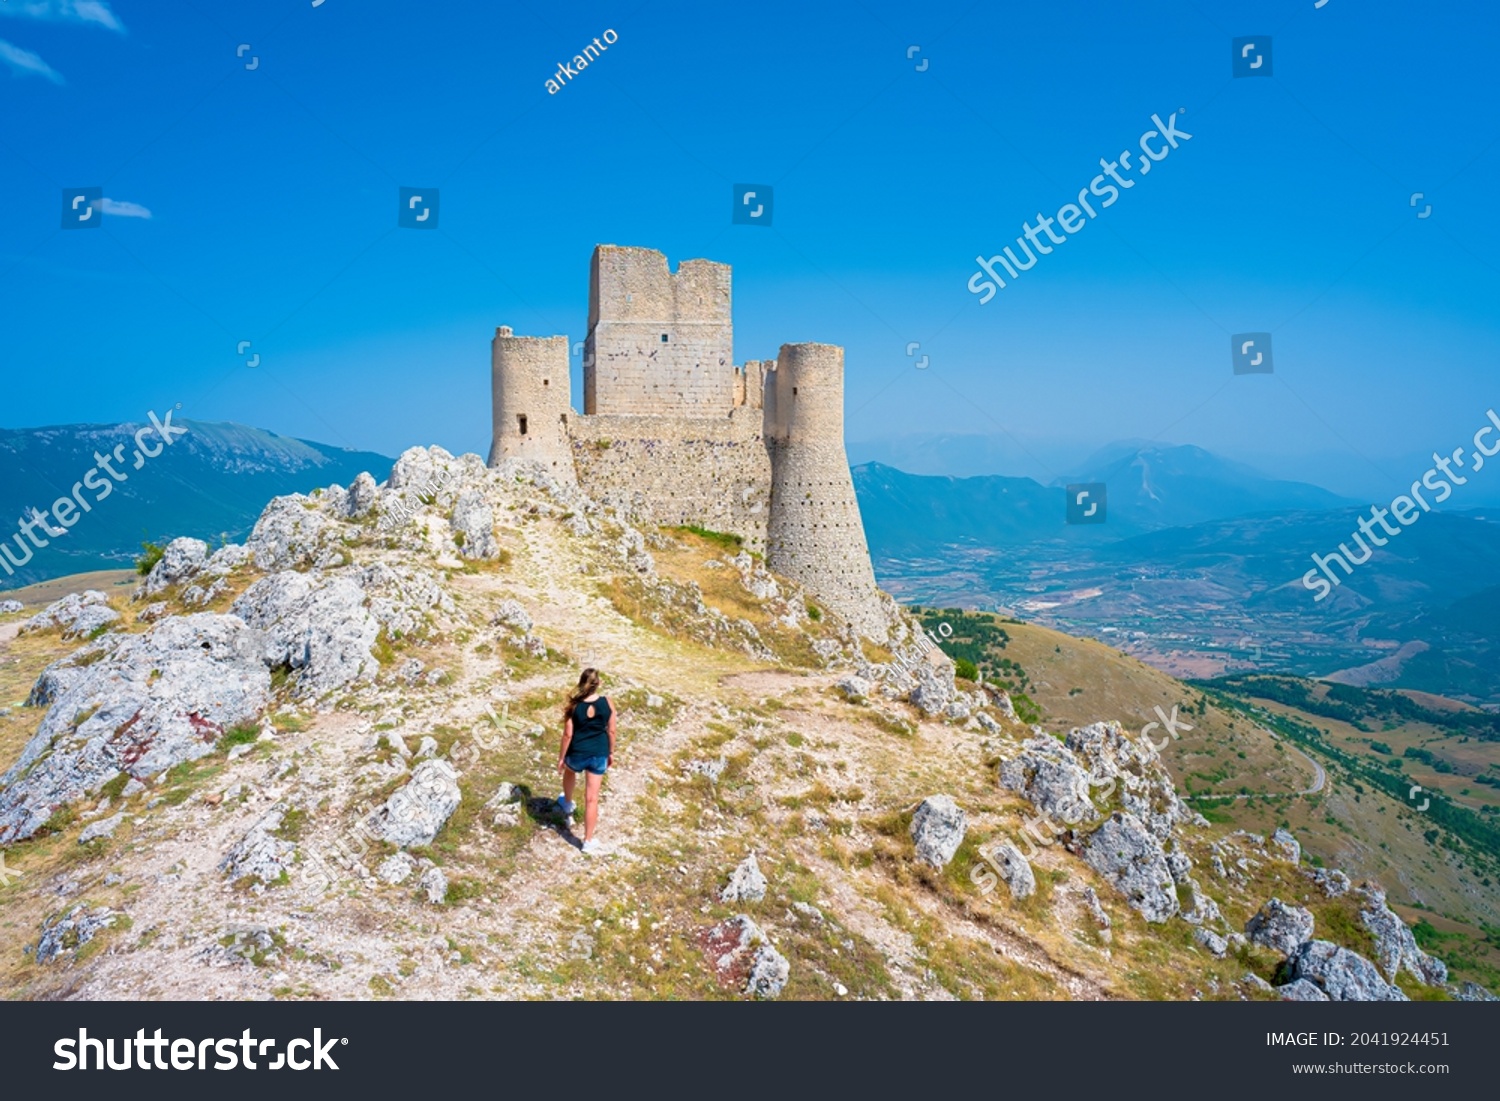 Castle of Rocca Calascio and Santa Maria della Pieta church, Aquila, Abruzzo, Italy. Part of Gran Sasso National Park, location for several film scenes, one of 15 most beautiful castle in the world #2041924451